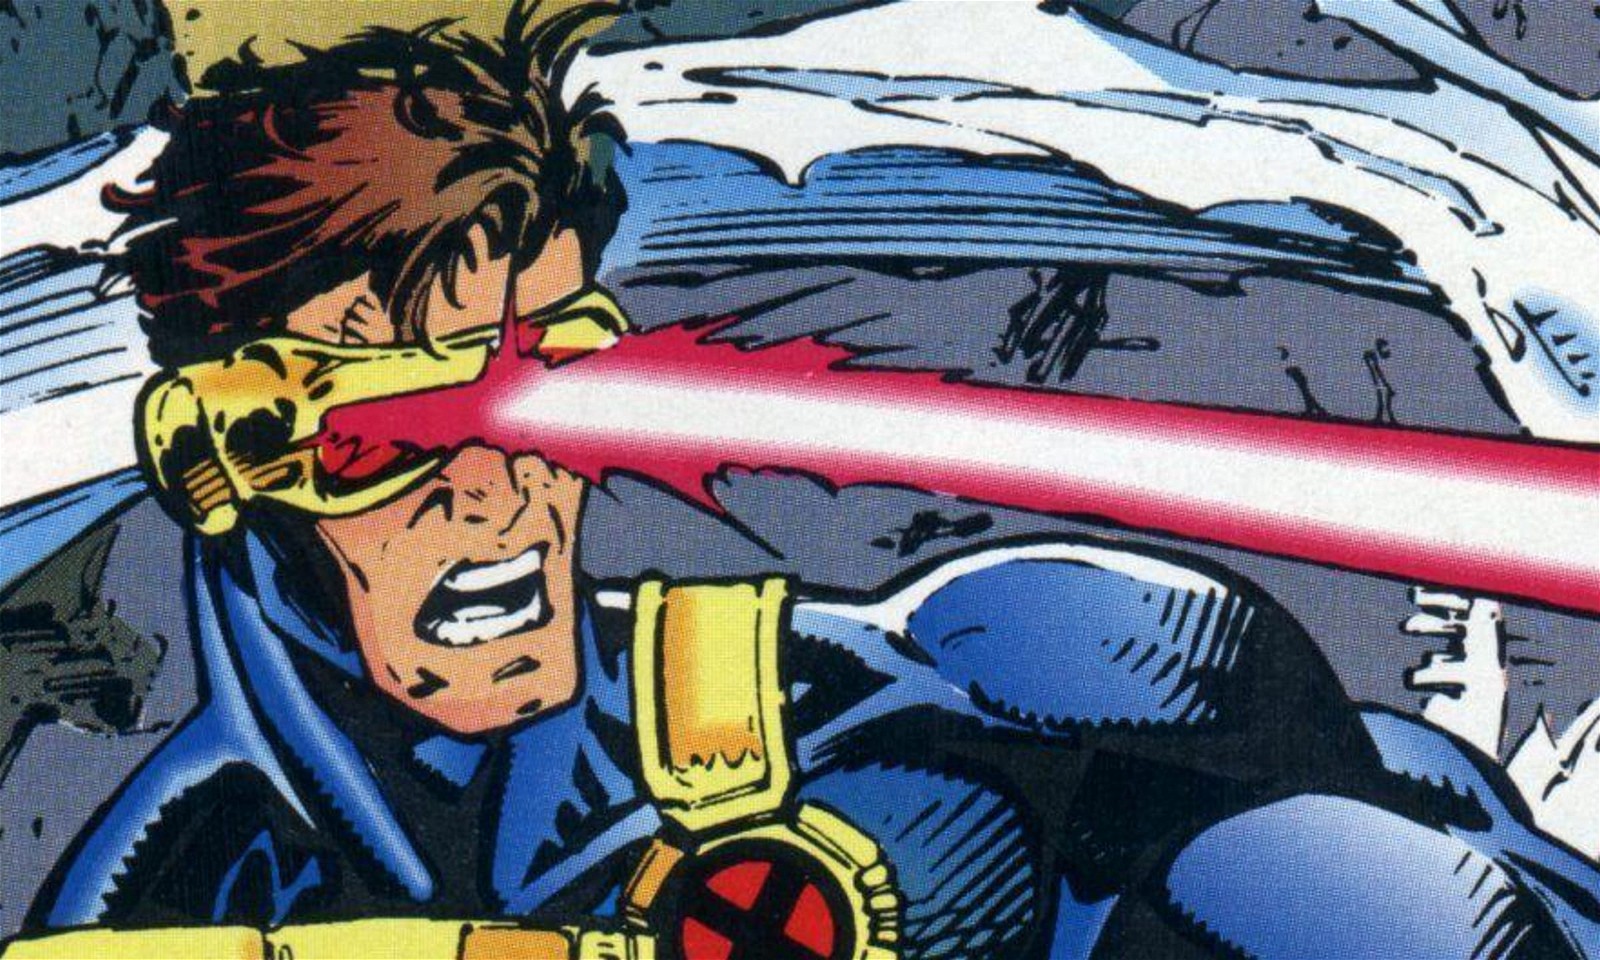 Cyclops in the Marvel Comics